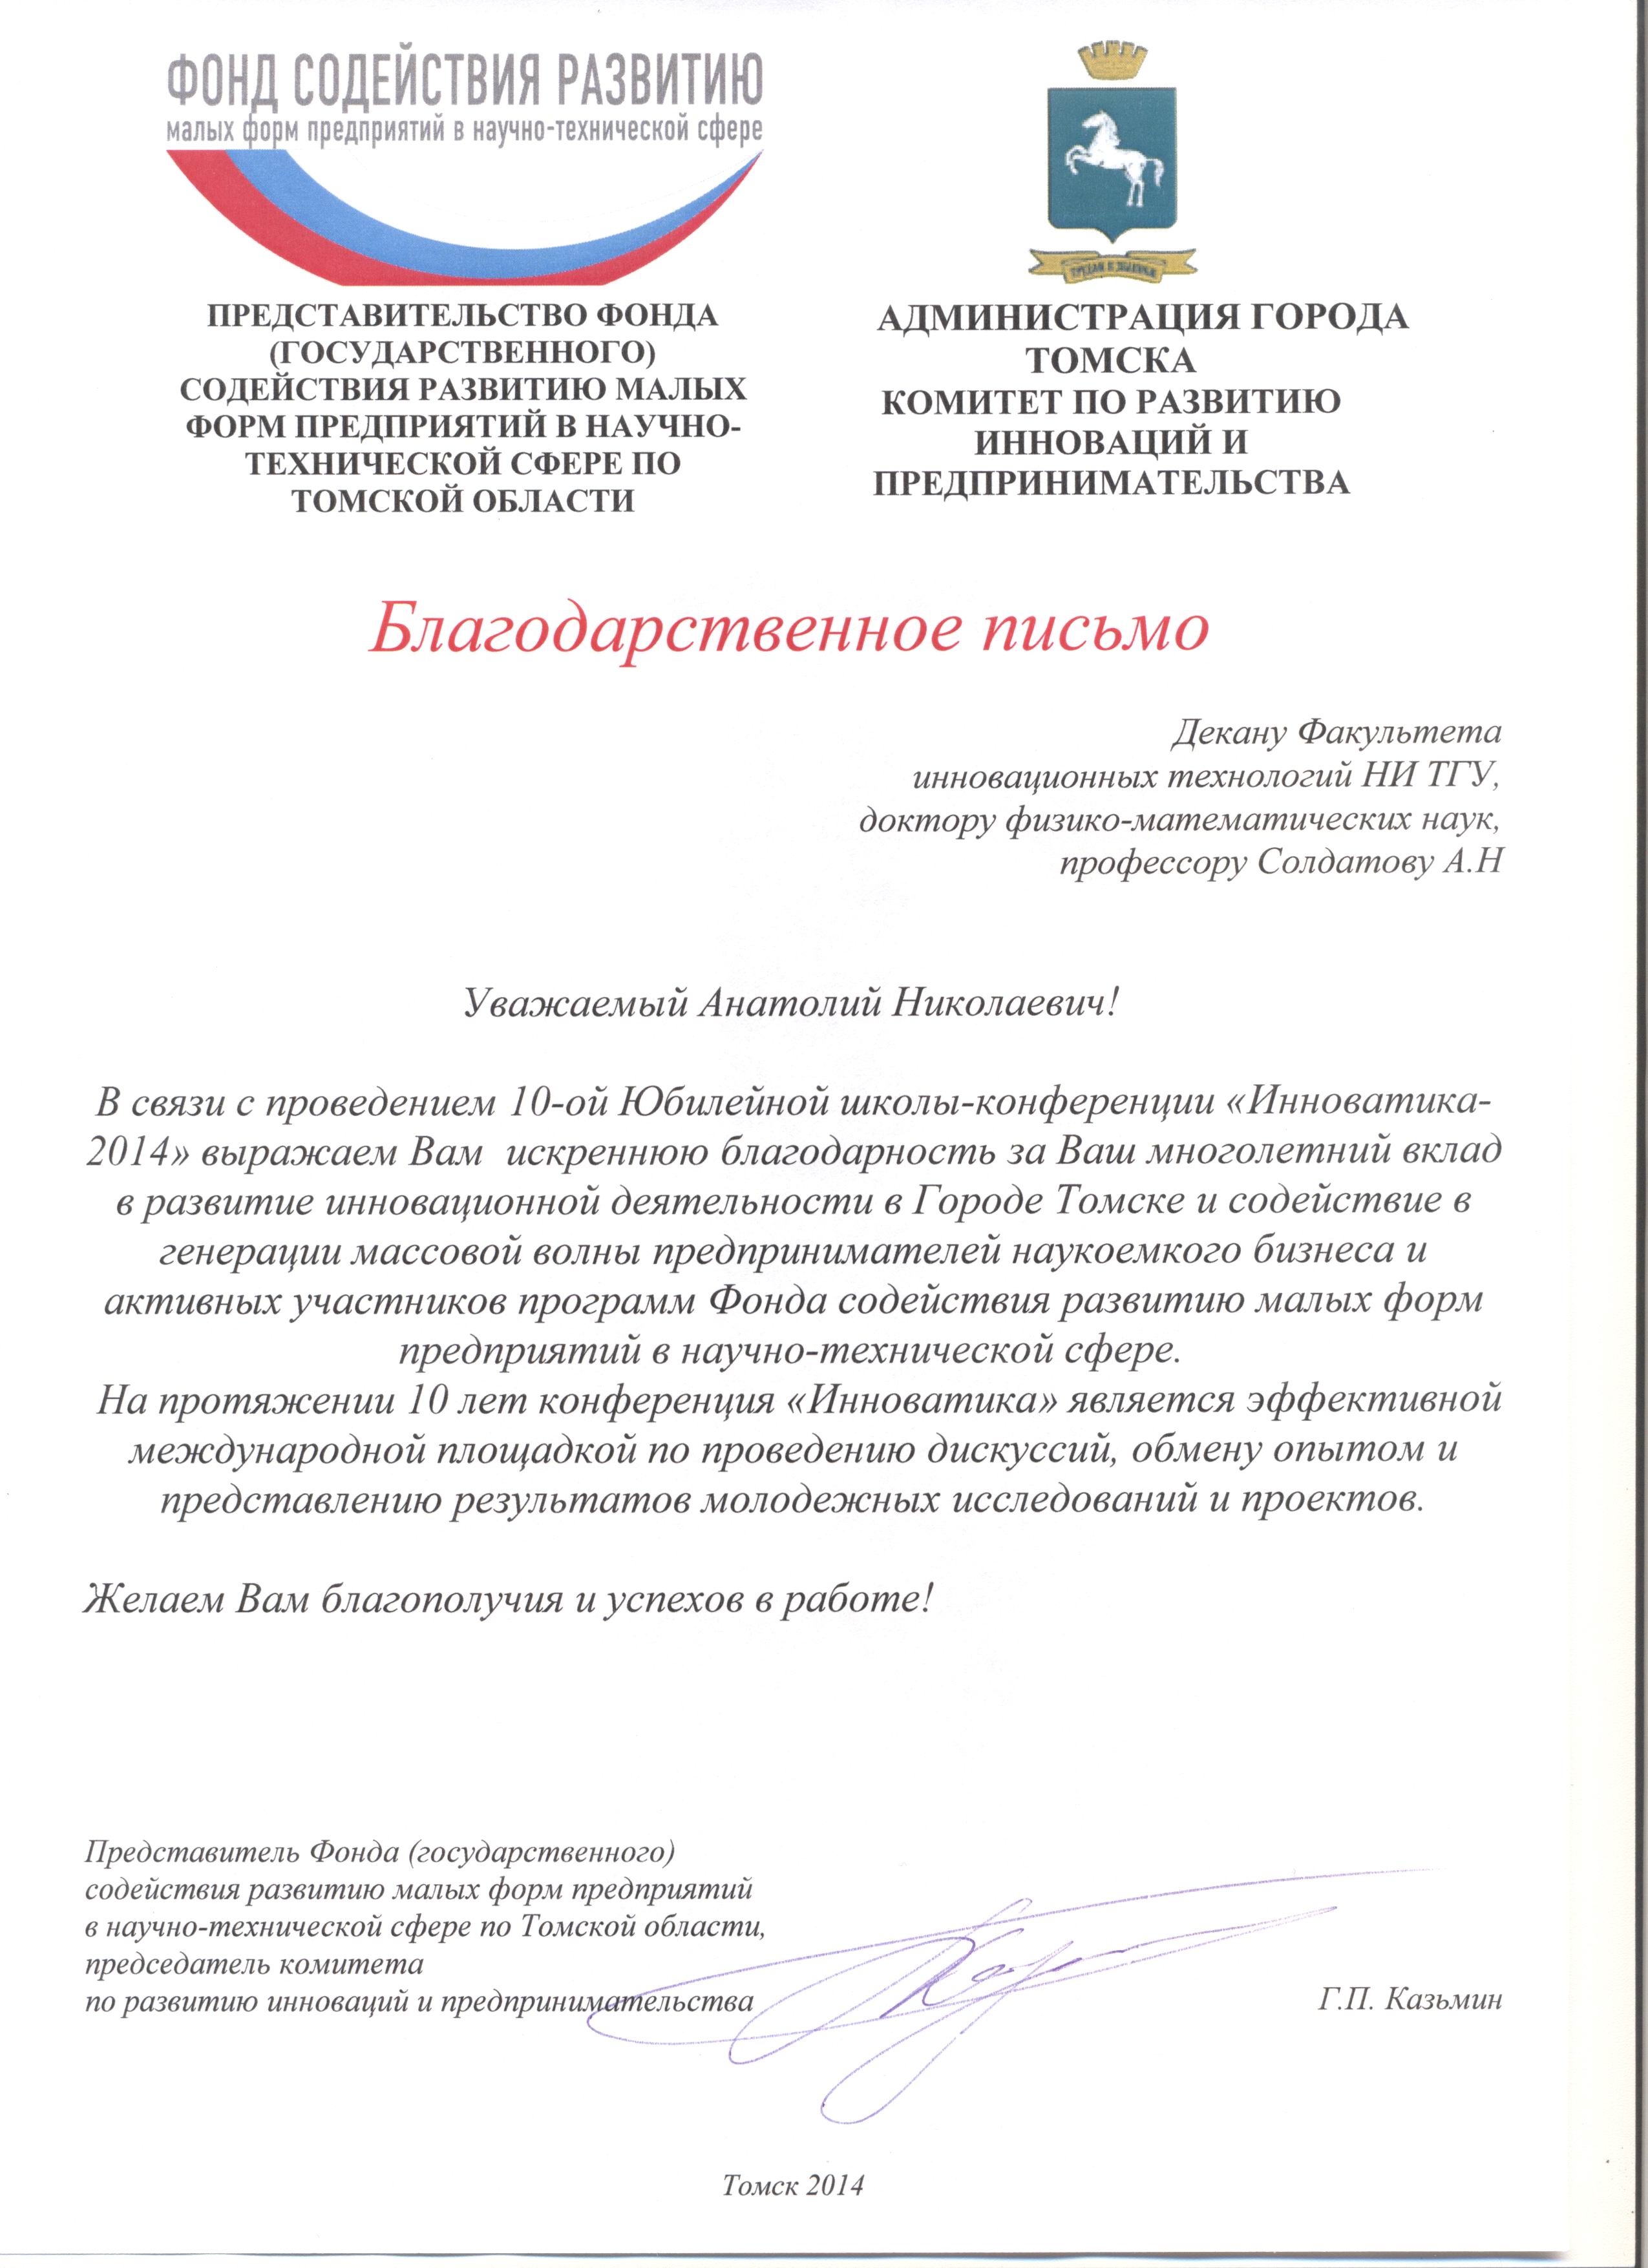 Благодарственное письмо от Администрации Томской области